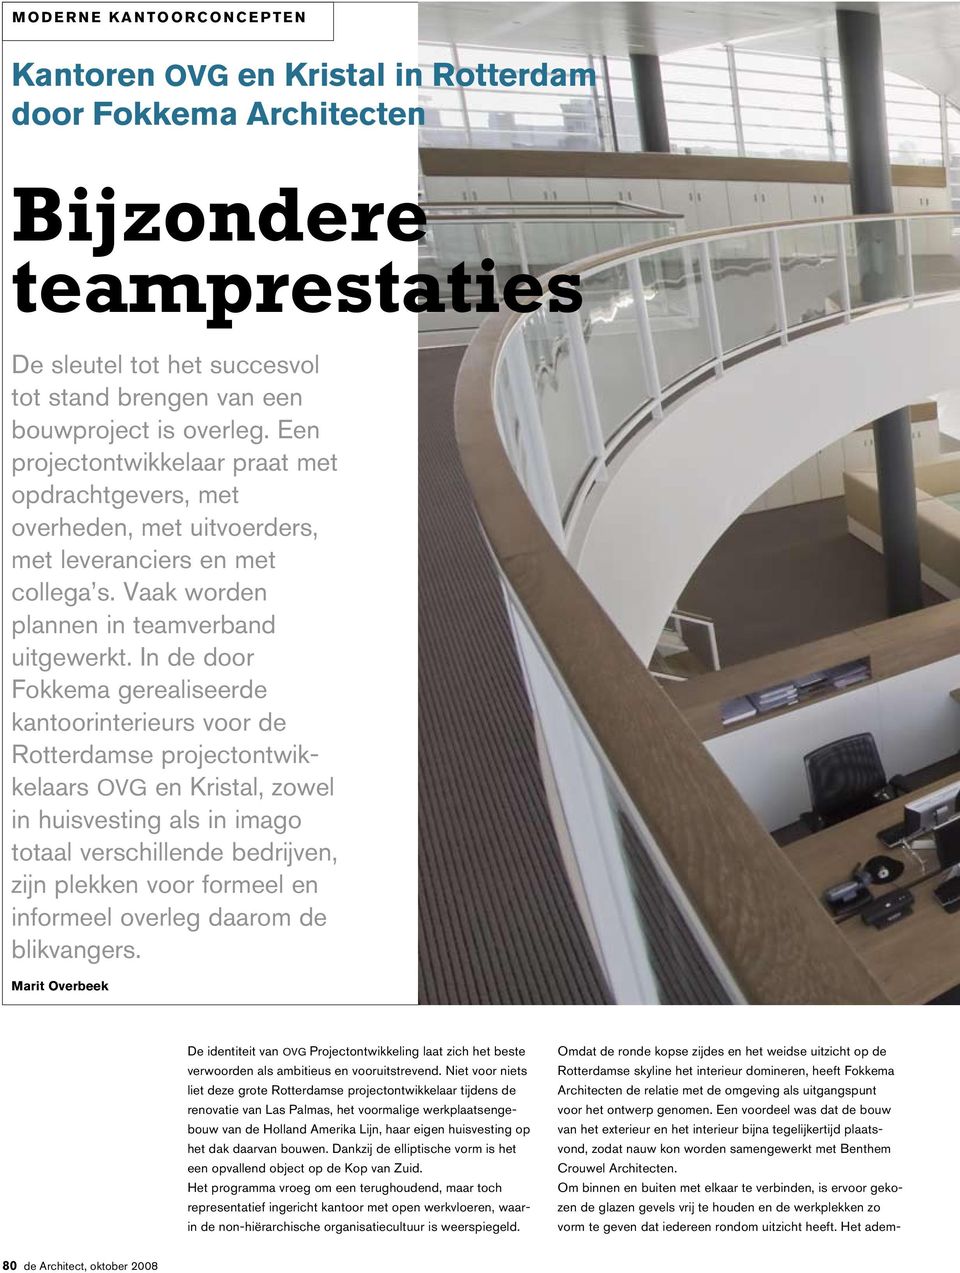 In de door Fokkema gerealiseerde kantoorinterieurs voor de Rotterdamse projectontwikkelaars OVG en Kristal, zowel in huisvesting als in imago totaal verschillende bedrijven, zijn plekken voor formeel